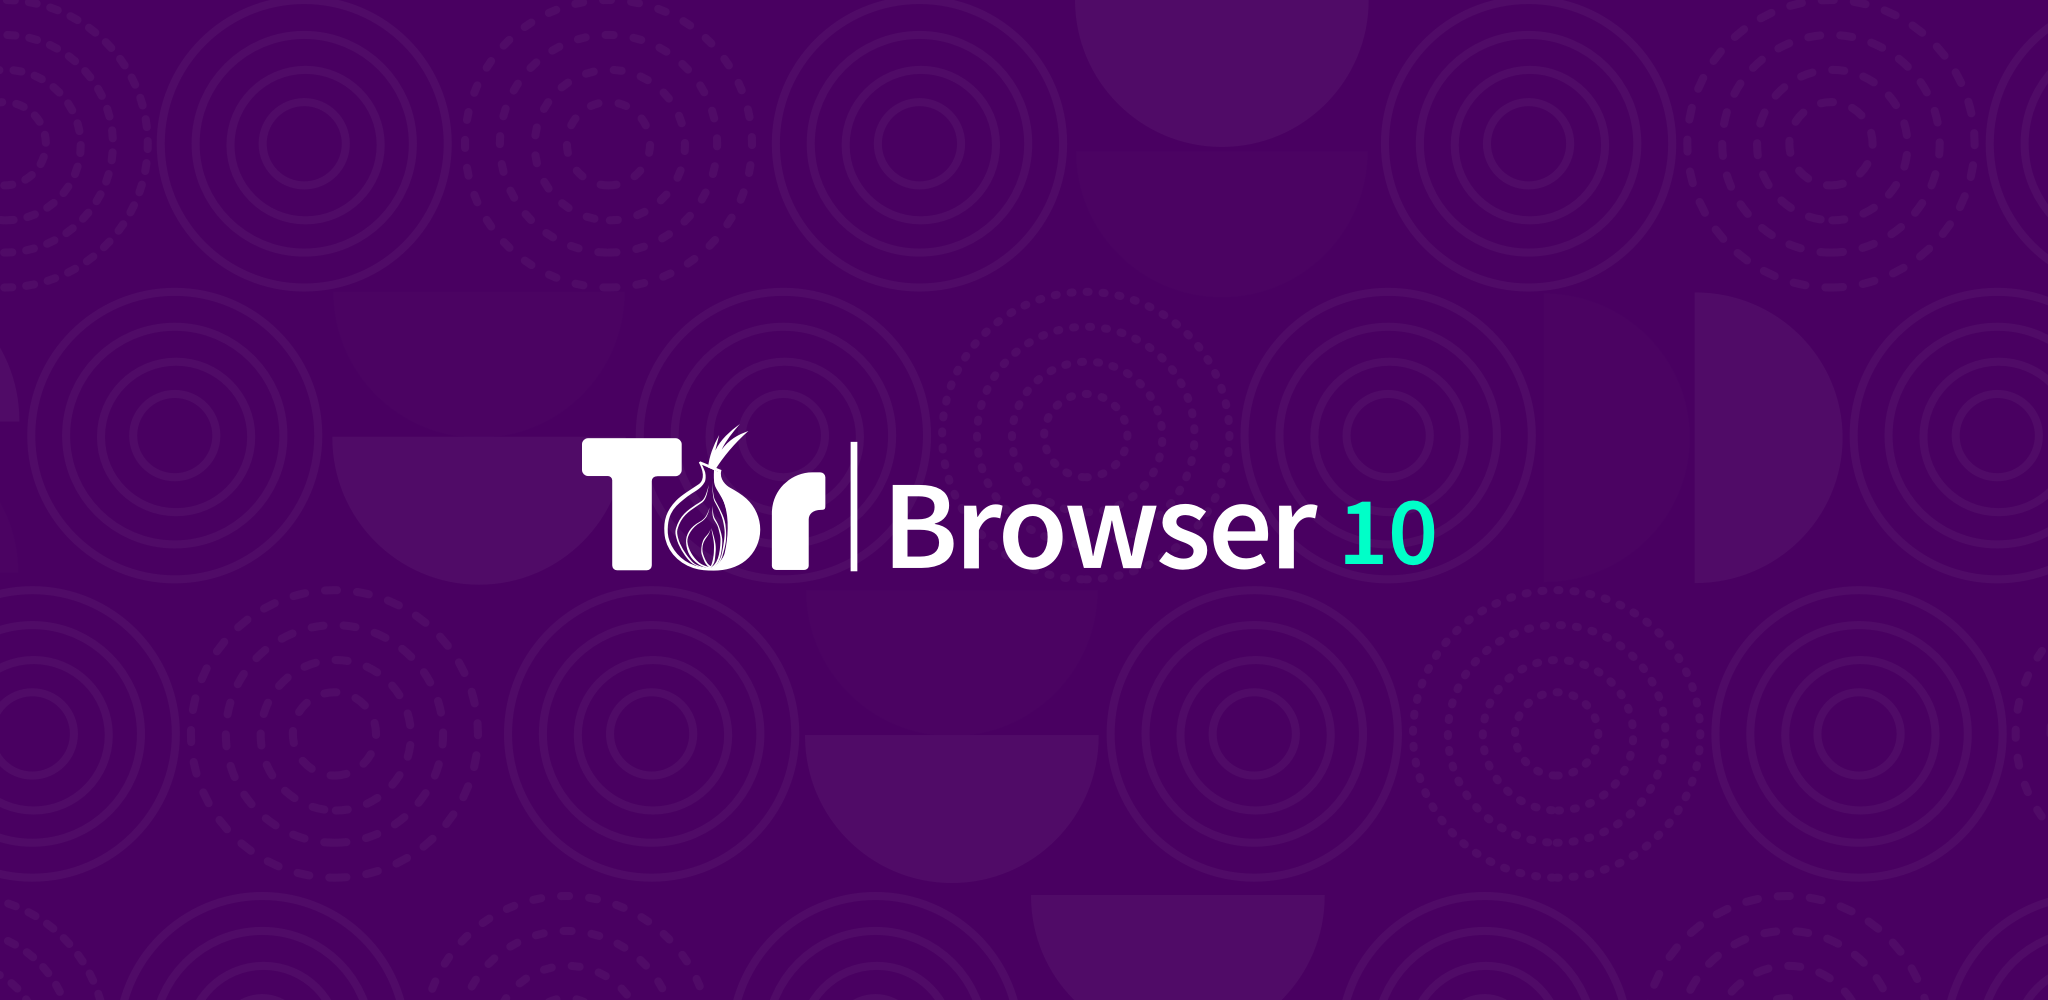 Tor browser на windows mega скачать adobe flash player для тор браузера mega